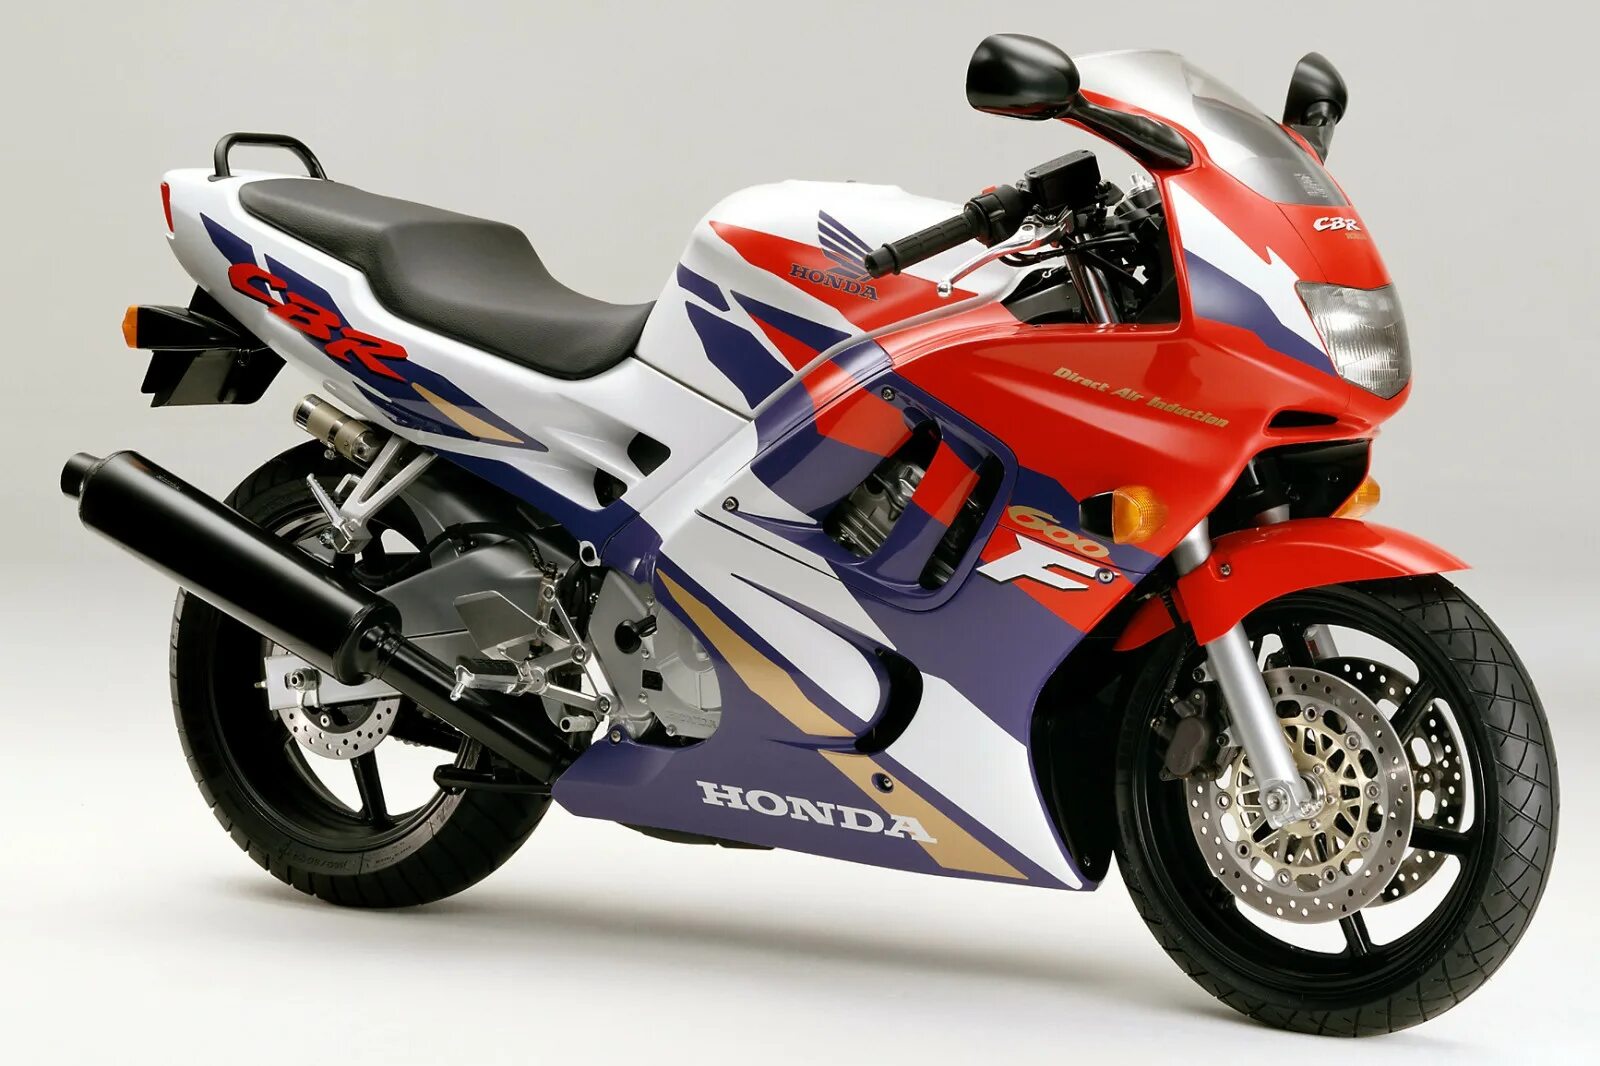 Honda CBR 600 f3. Honda CBR 600 f3 1995. Honda CBR 600 f1. Honda CBR 600 F 1998. Купить мотоцикл сбр